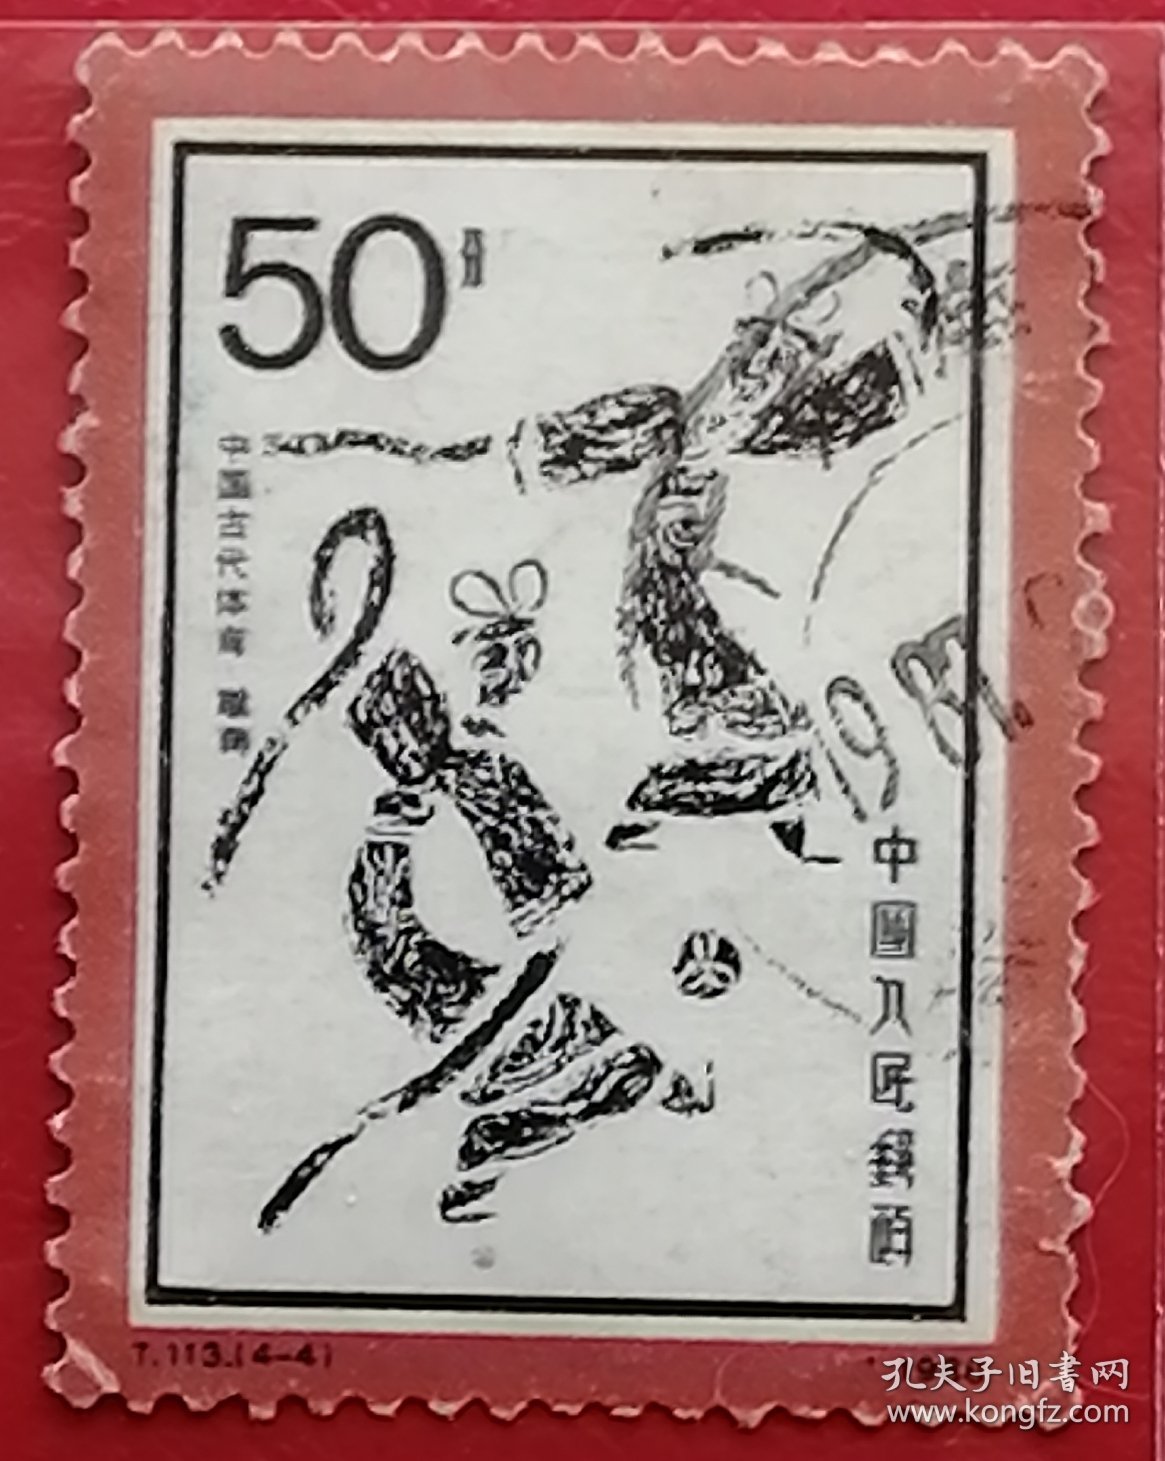 中国邮票 t113 1986年 发行量627万 中国古代体育 蹴鞠 4-4 信销 “蹴”用脚蹴、蹋、踢，“鞠”最早系外包皮革、内实米糠的球。“蹴鞠”指古人以脚蹴、蹋、踢皮球的活动,早在战国时期中国民间就流行蹴鞠游戏，而从汉代开始又成为兵家练兵之法，宋代又出现了蹴鞠组织与蹴鞠艺人，清代开始流行冰上蹙鞠。2006年5月20日，蹴鞠已作为非物质文化遗产经国务院批准列入第一批国家级非物质文化遗产名录。